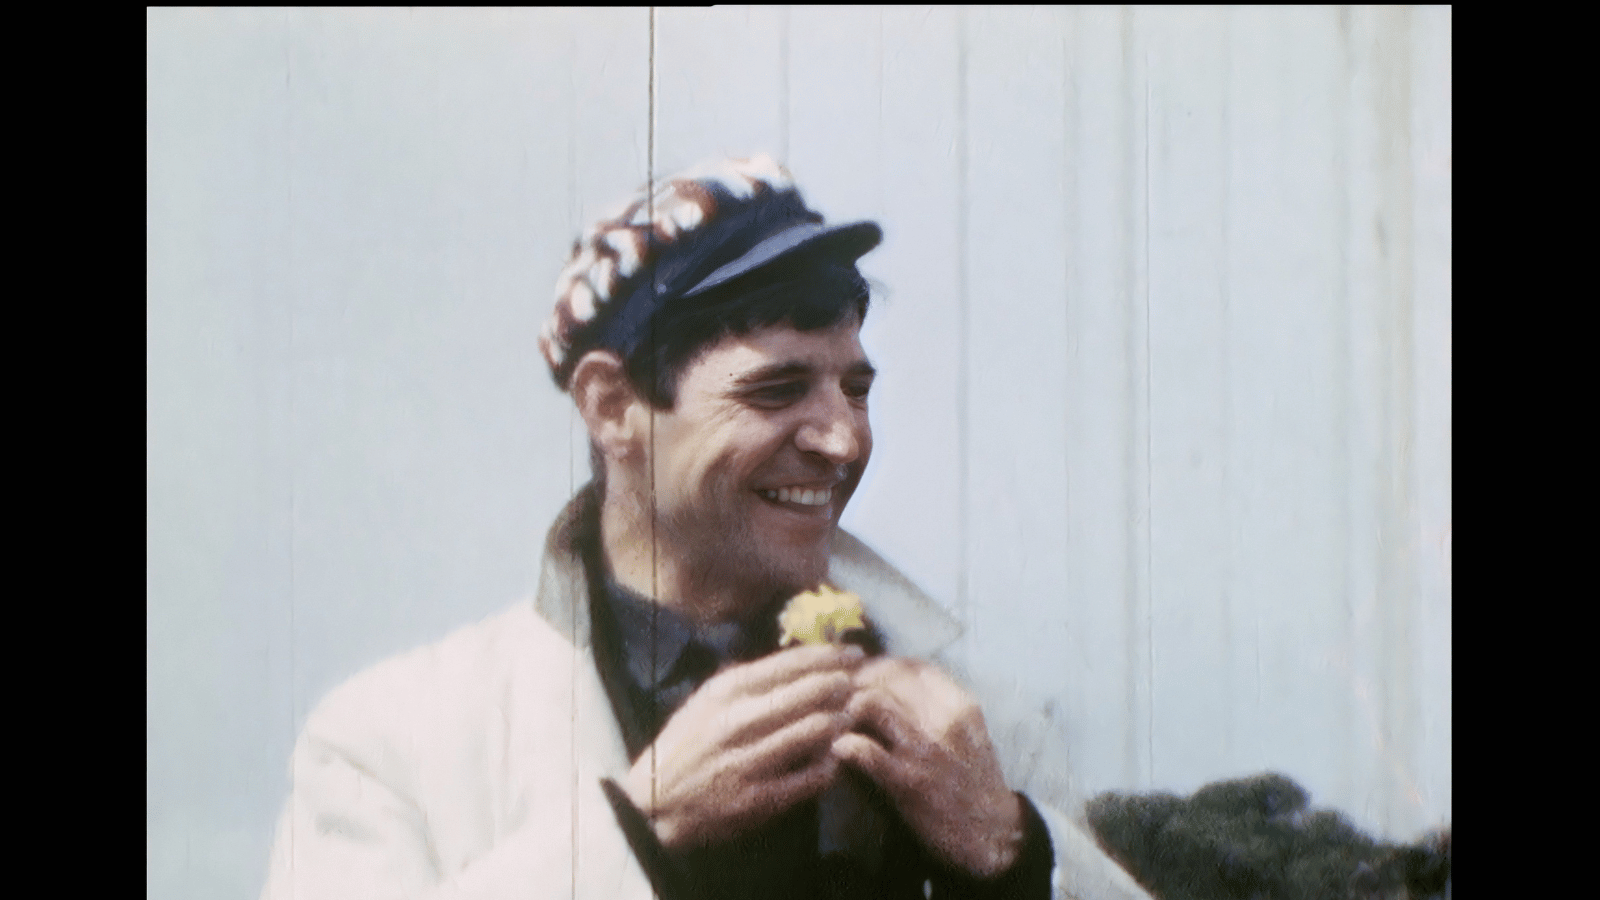 Still from Bill Douglas: My Best Friend. A vintage film image of Bill Douglas wearing a flower cap.